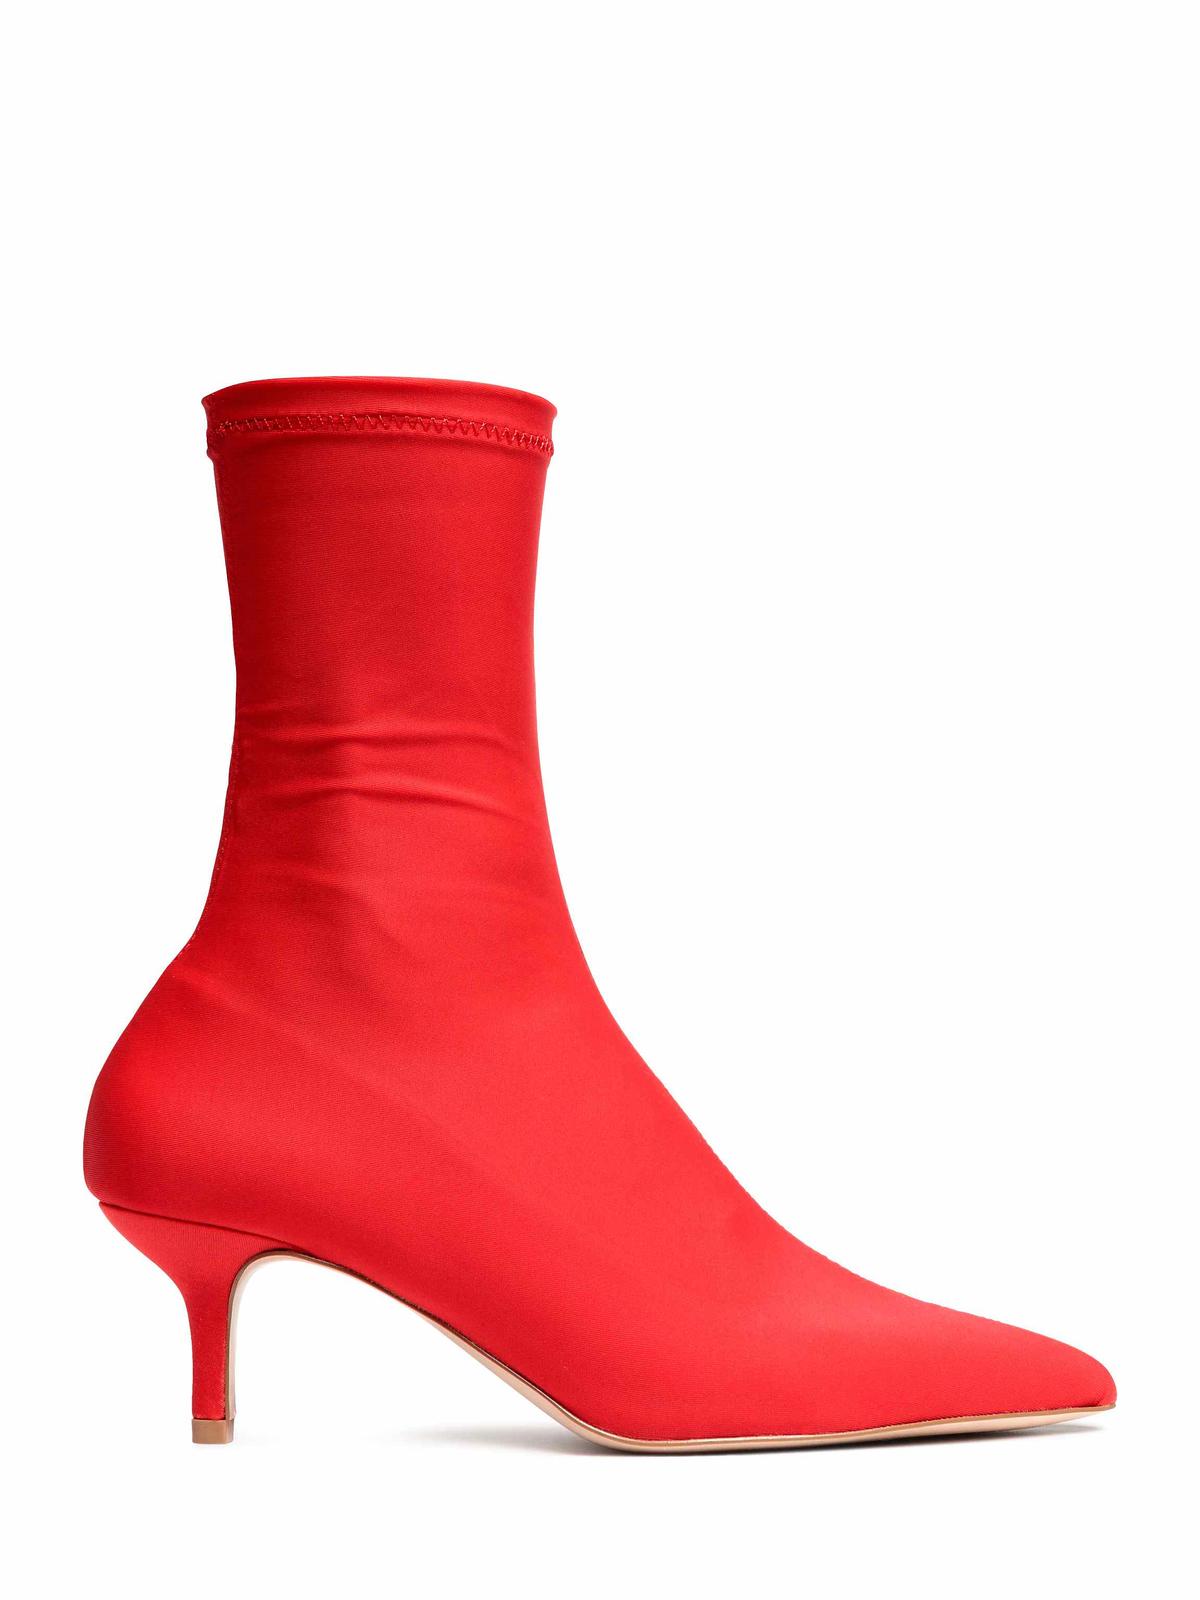 Czerwone buty - H&M - 199 zł